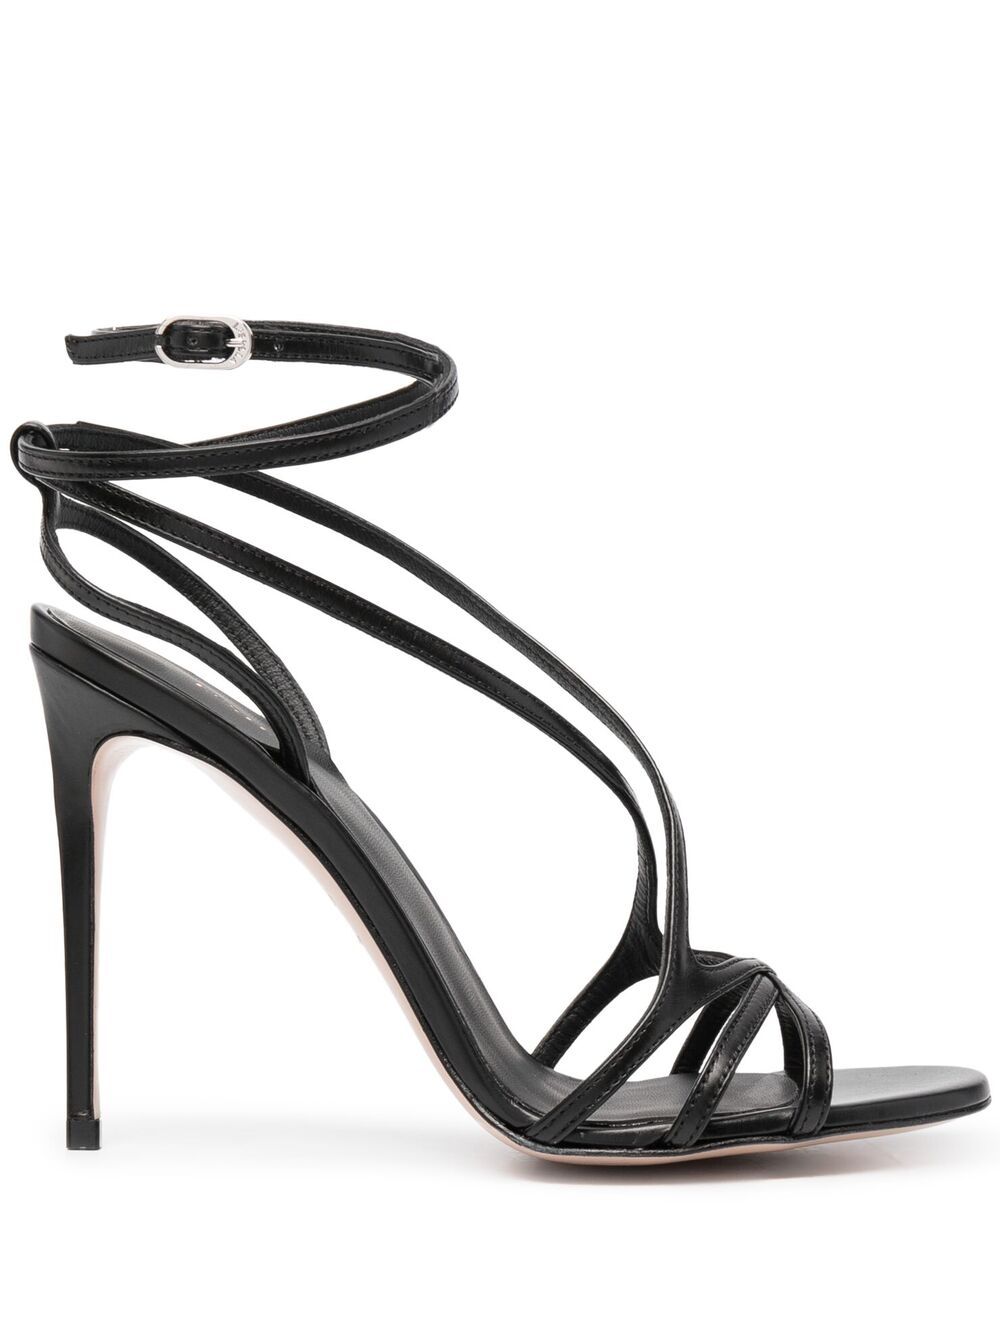 Le Silla Sandals Belen 105 Calfskin In Black | ModeSens